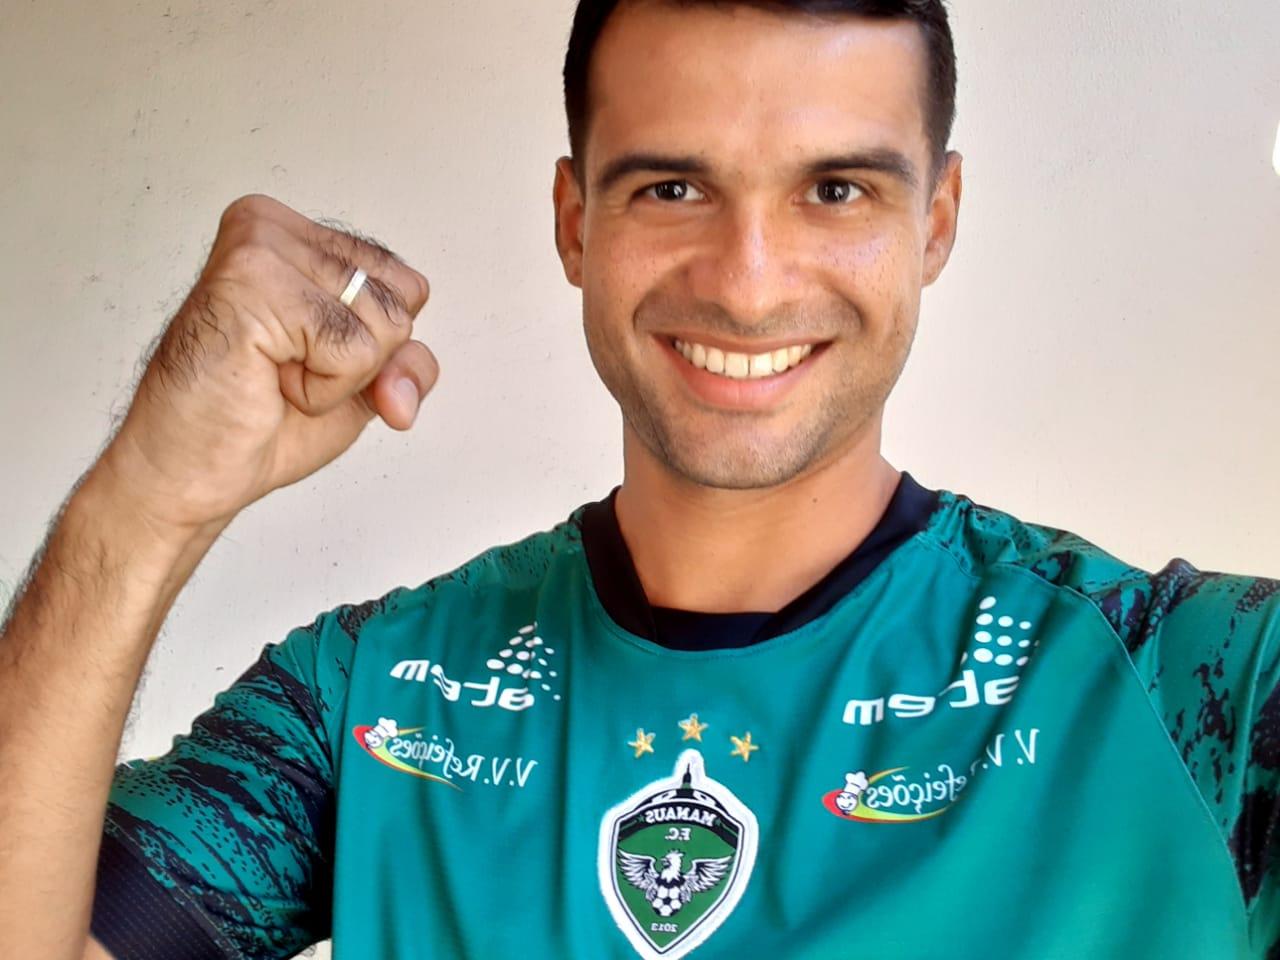 Sócio-torcedor Brunno Souza vence o sorteio do MANAUSFC e vai assistir ao confronto do clube contra o Botafogo-PB